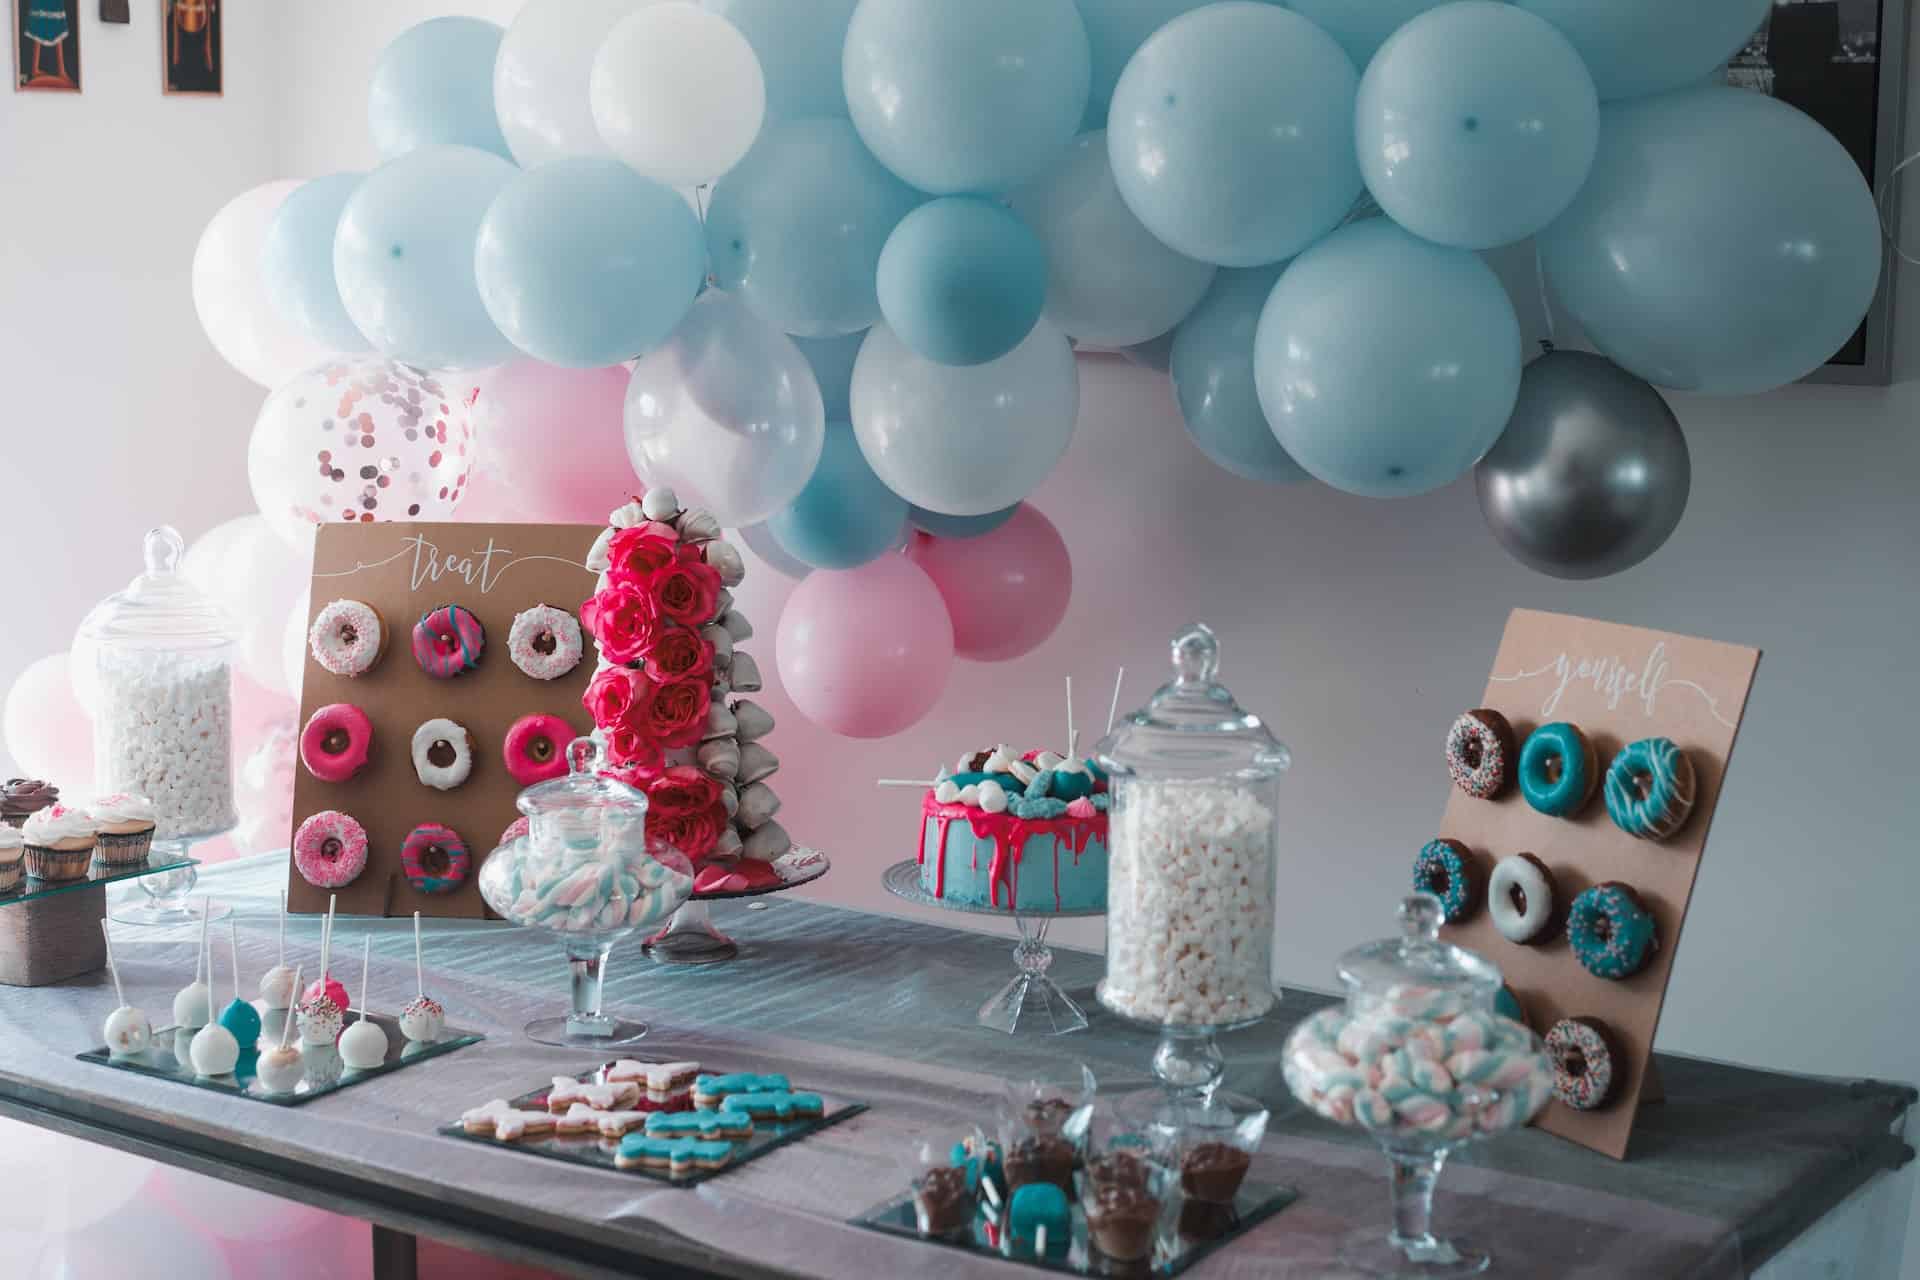 Jak zorganizować przyjęcie urodzinowe?